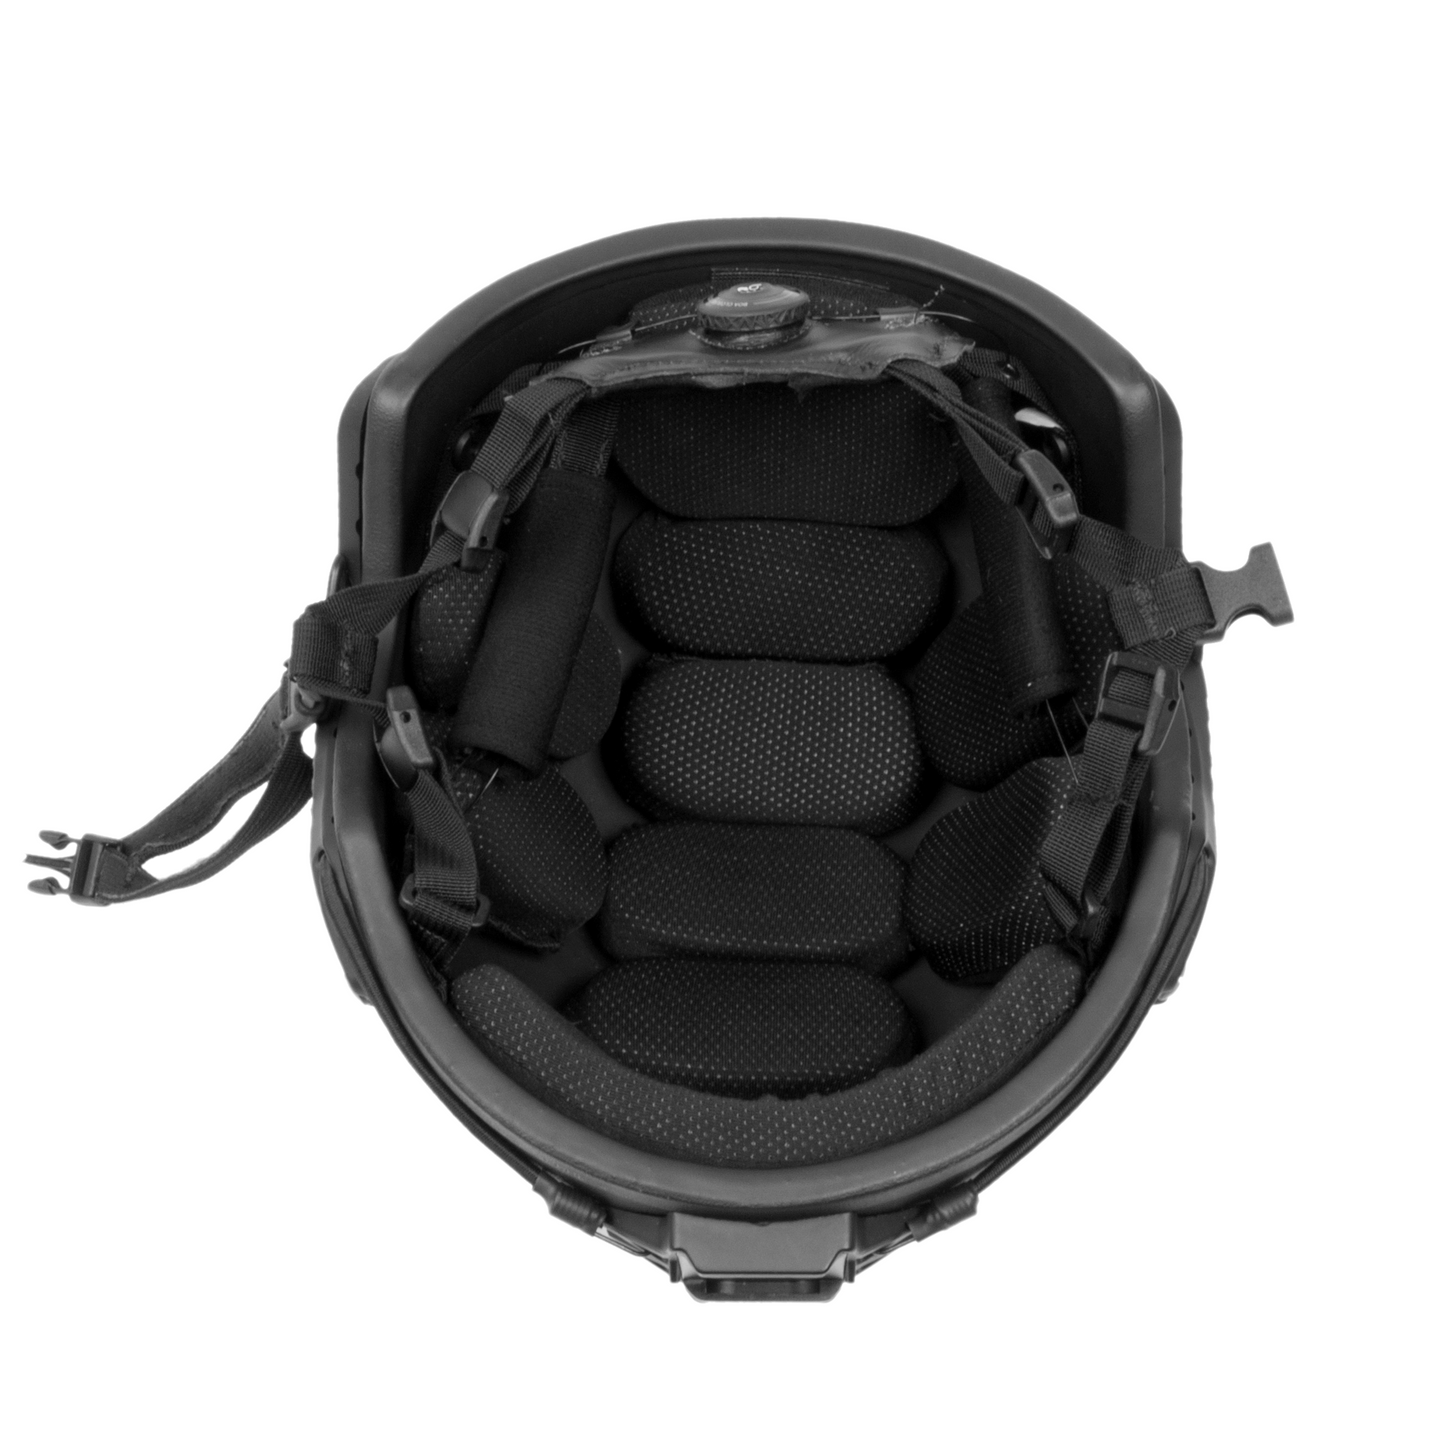 4D Tactical Helmet Pad System